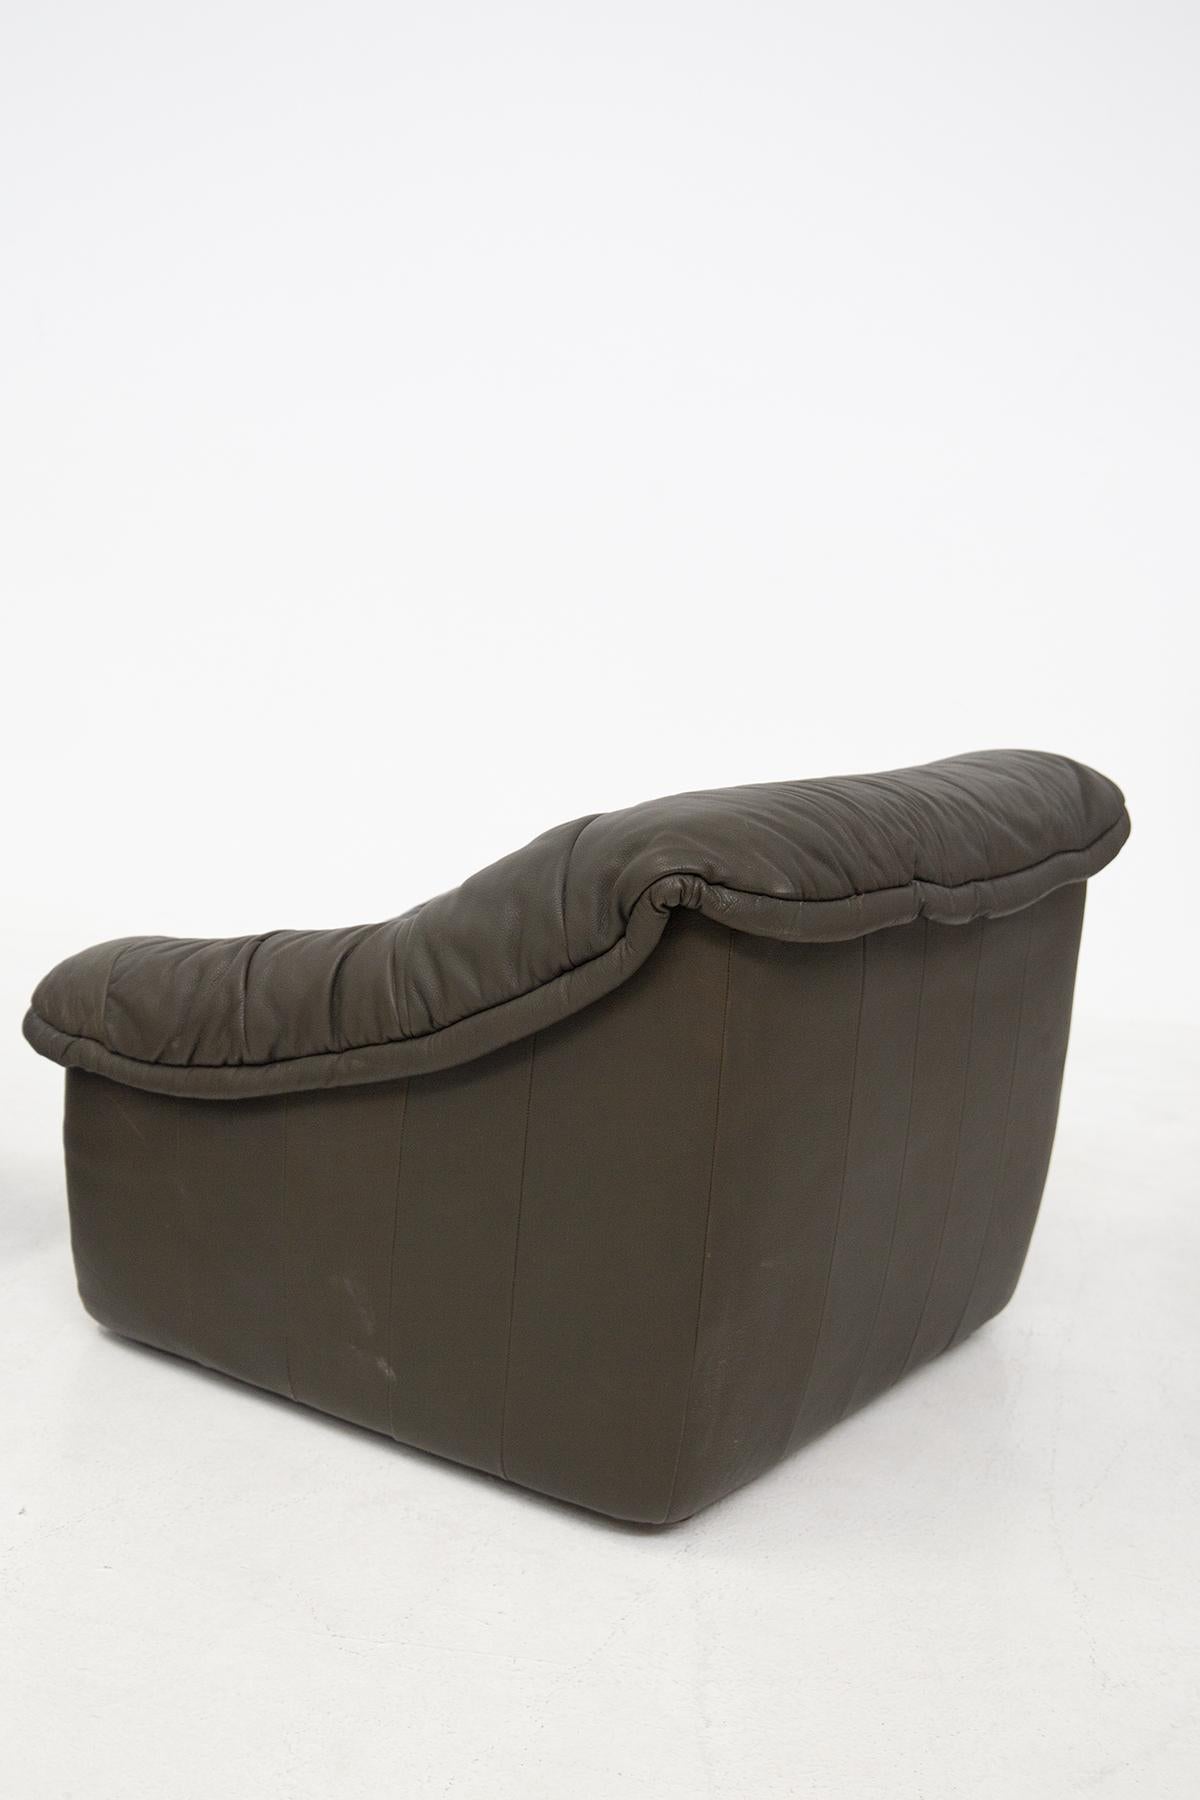 Vintage Brown Leather Armchairs by De pas, D'urbino, Lomazzi 2